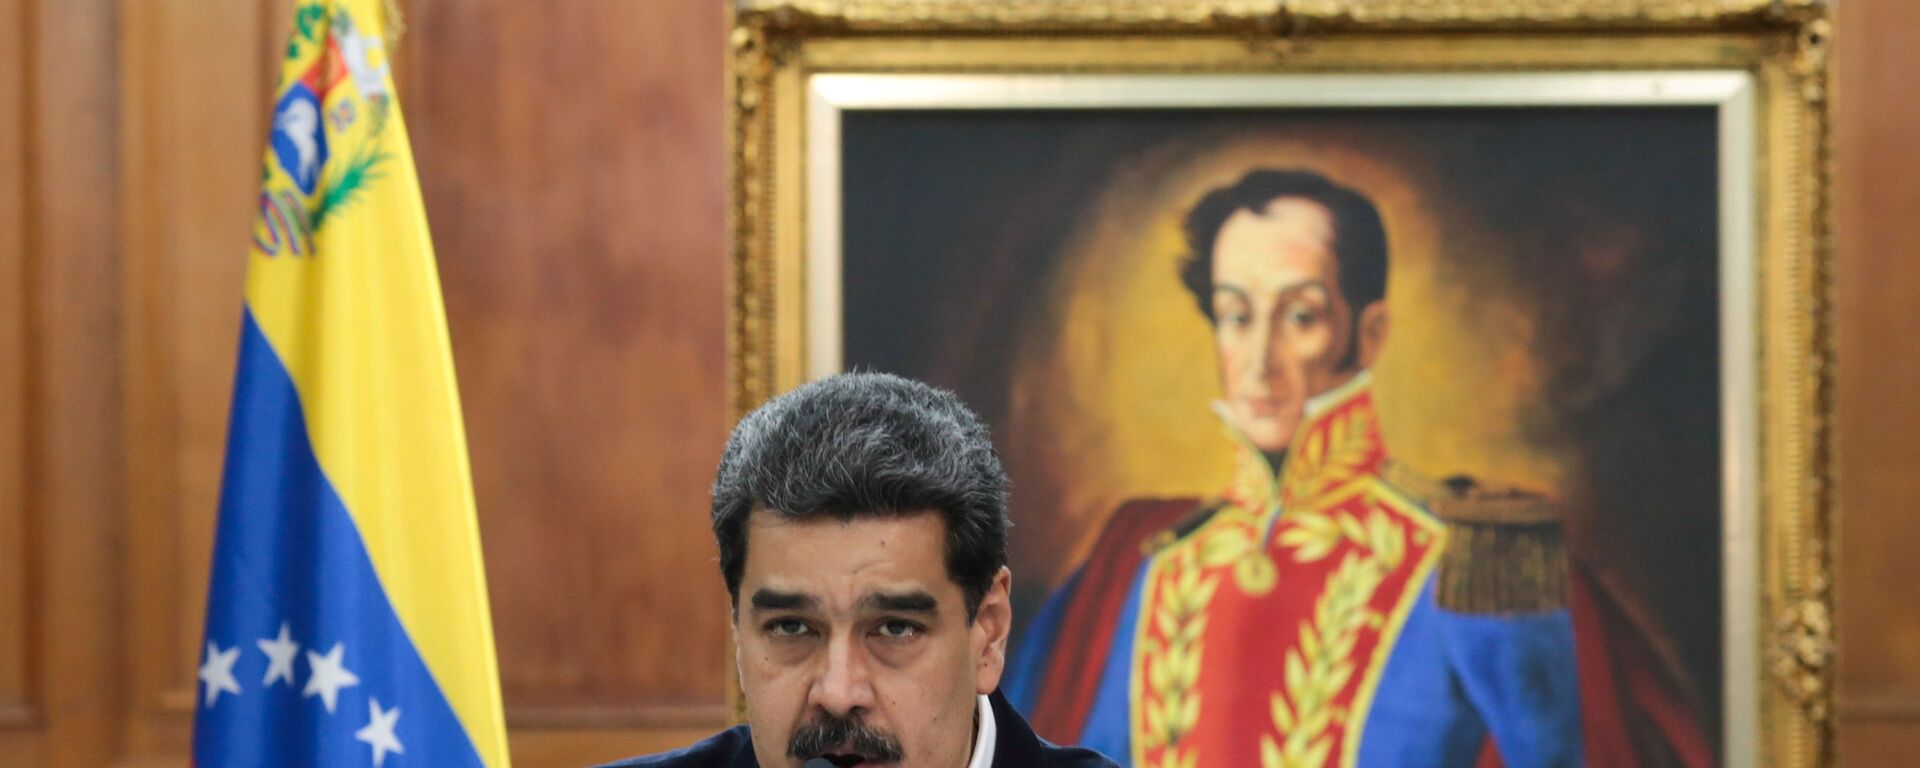 Venezüella Devlet Başkanı Nicolas Maduro - Sputnik Türkiye, 1920, 05.01.2021